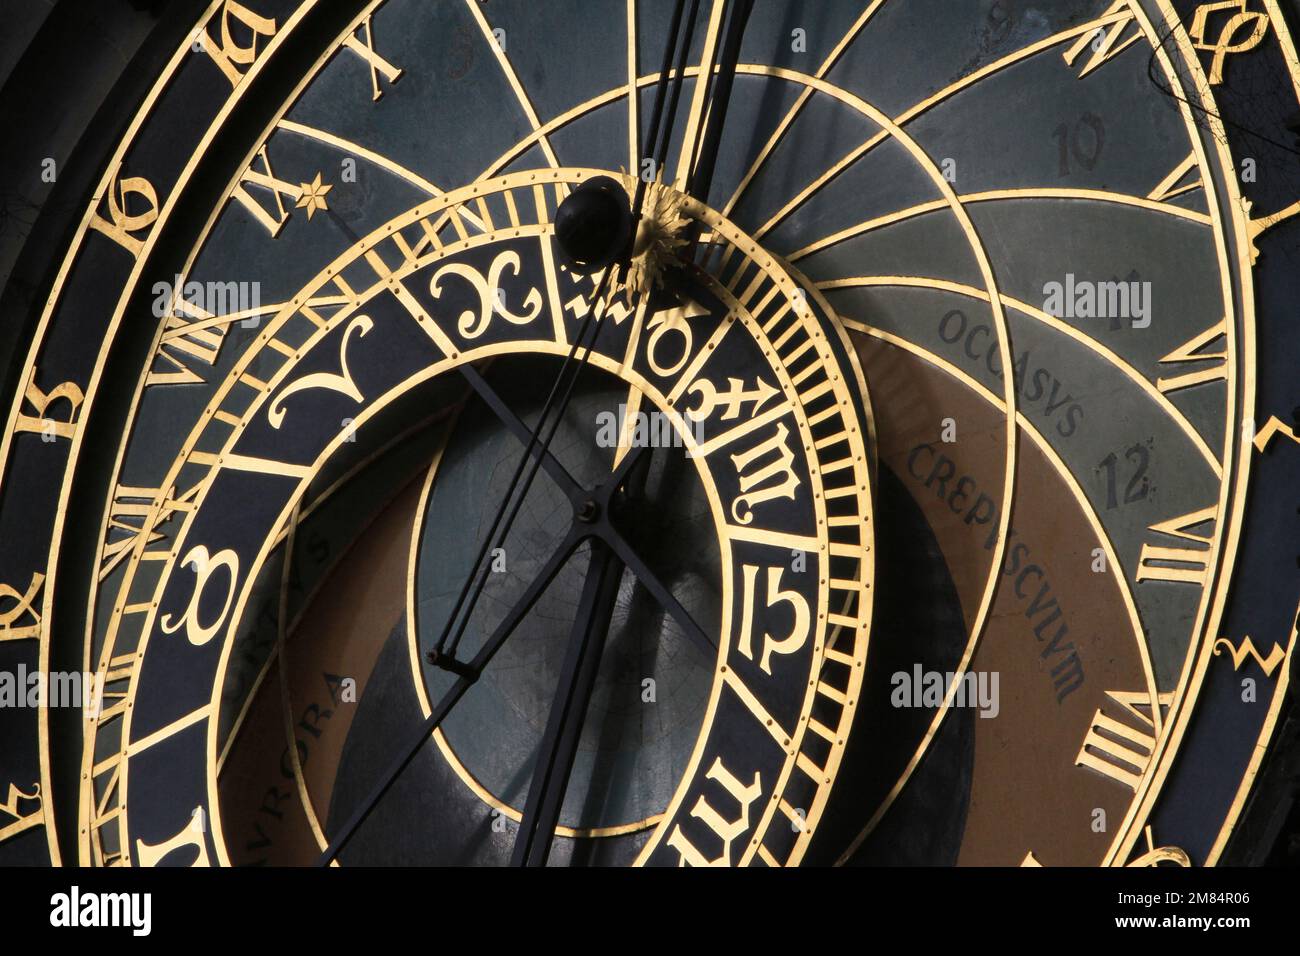 Horloge astronomique. La Tour de l'Horloge. Prague. Tchèquie. Europe. Stock Photo